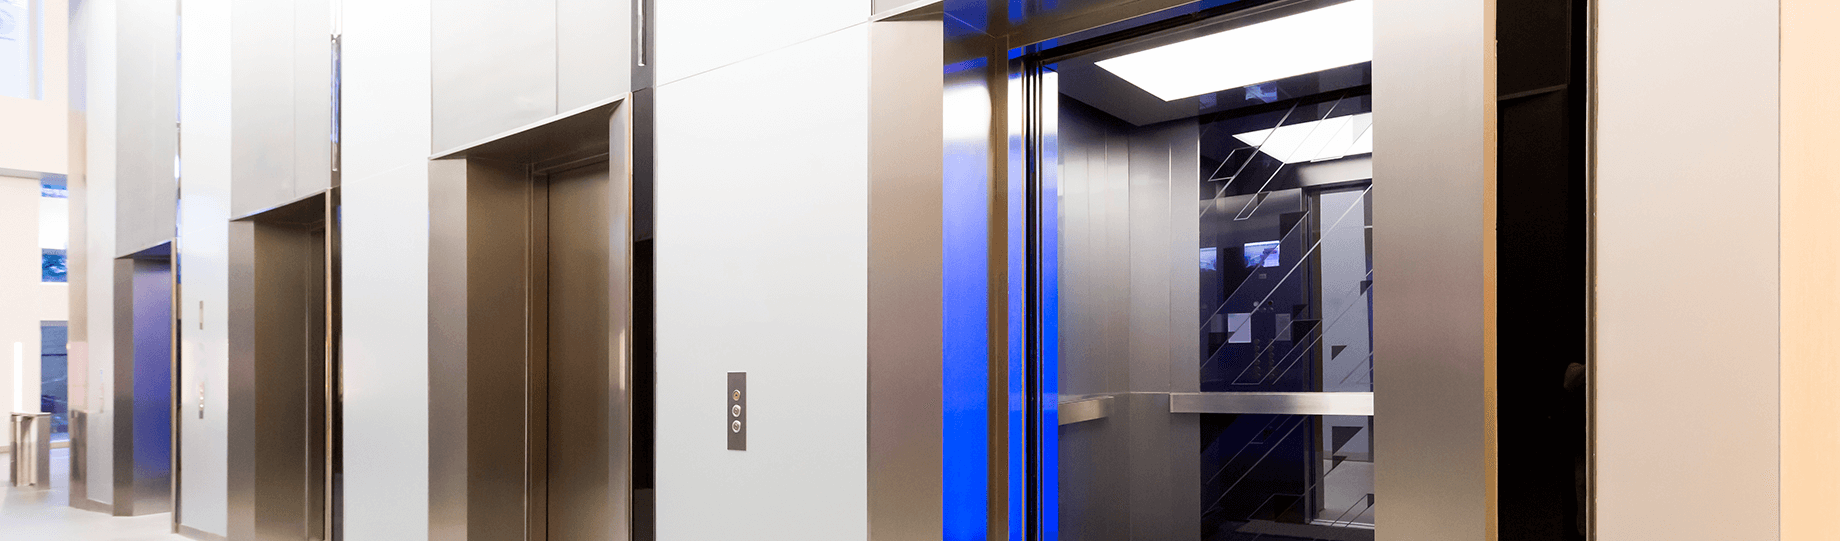 4 acidentes mais comuns em elevadores